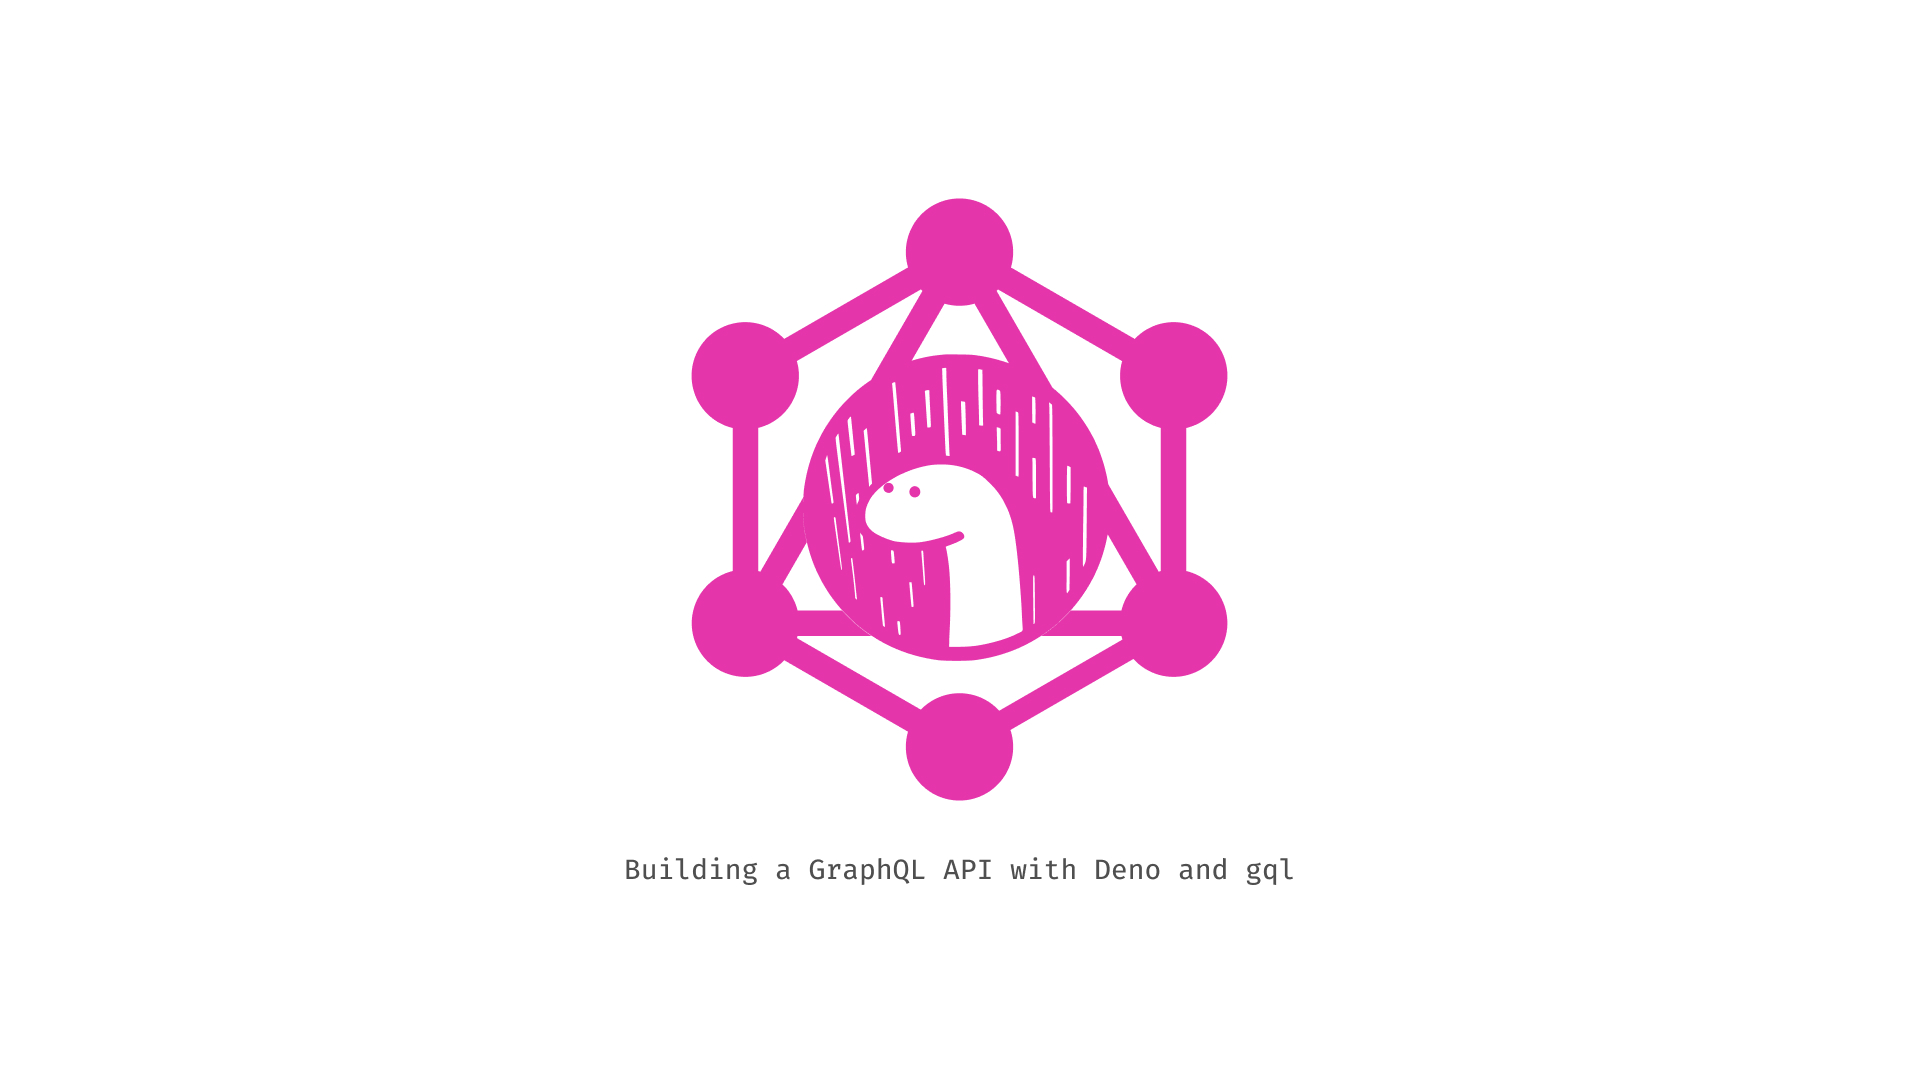 Building a GraphQL API with Deno and gql